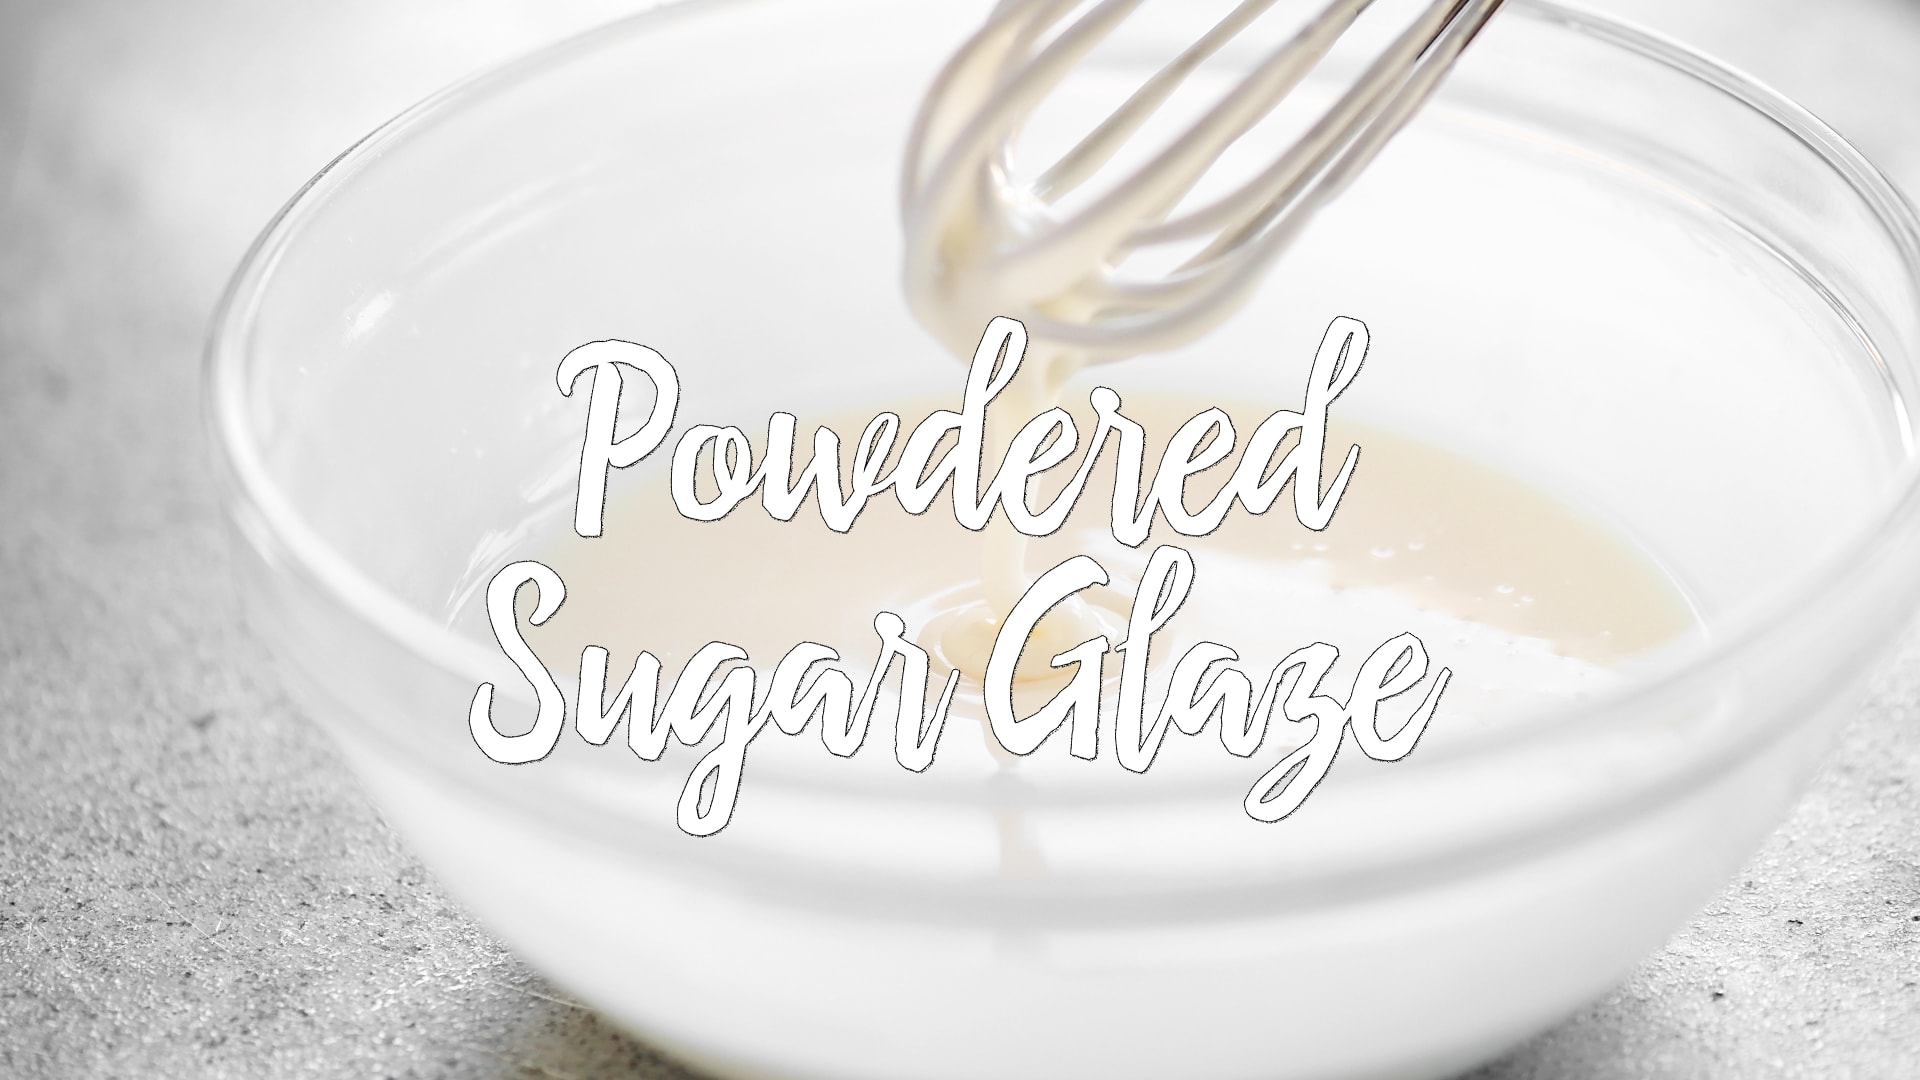 Powdered Sugar Glaze - Vintage Kitchen Notes